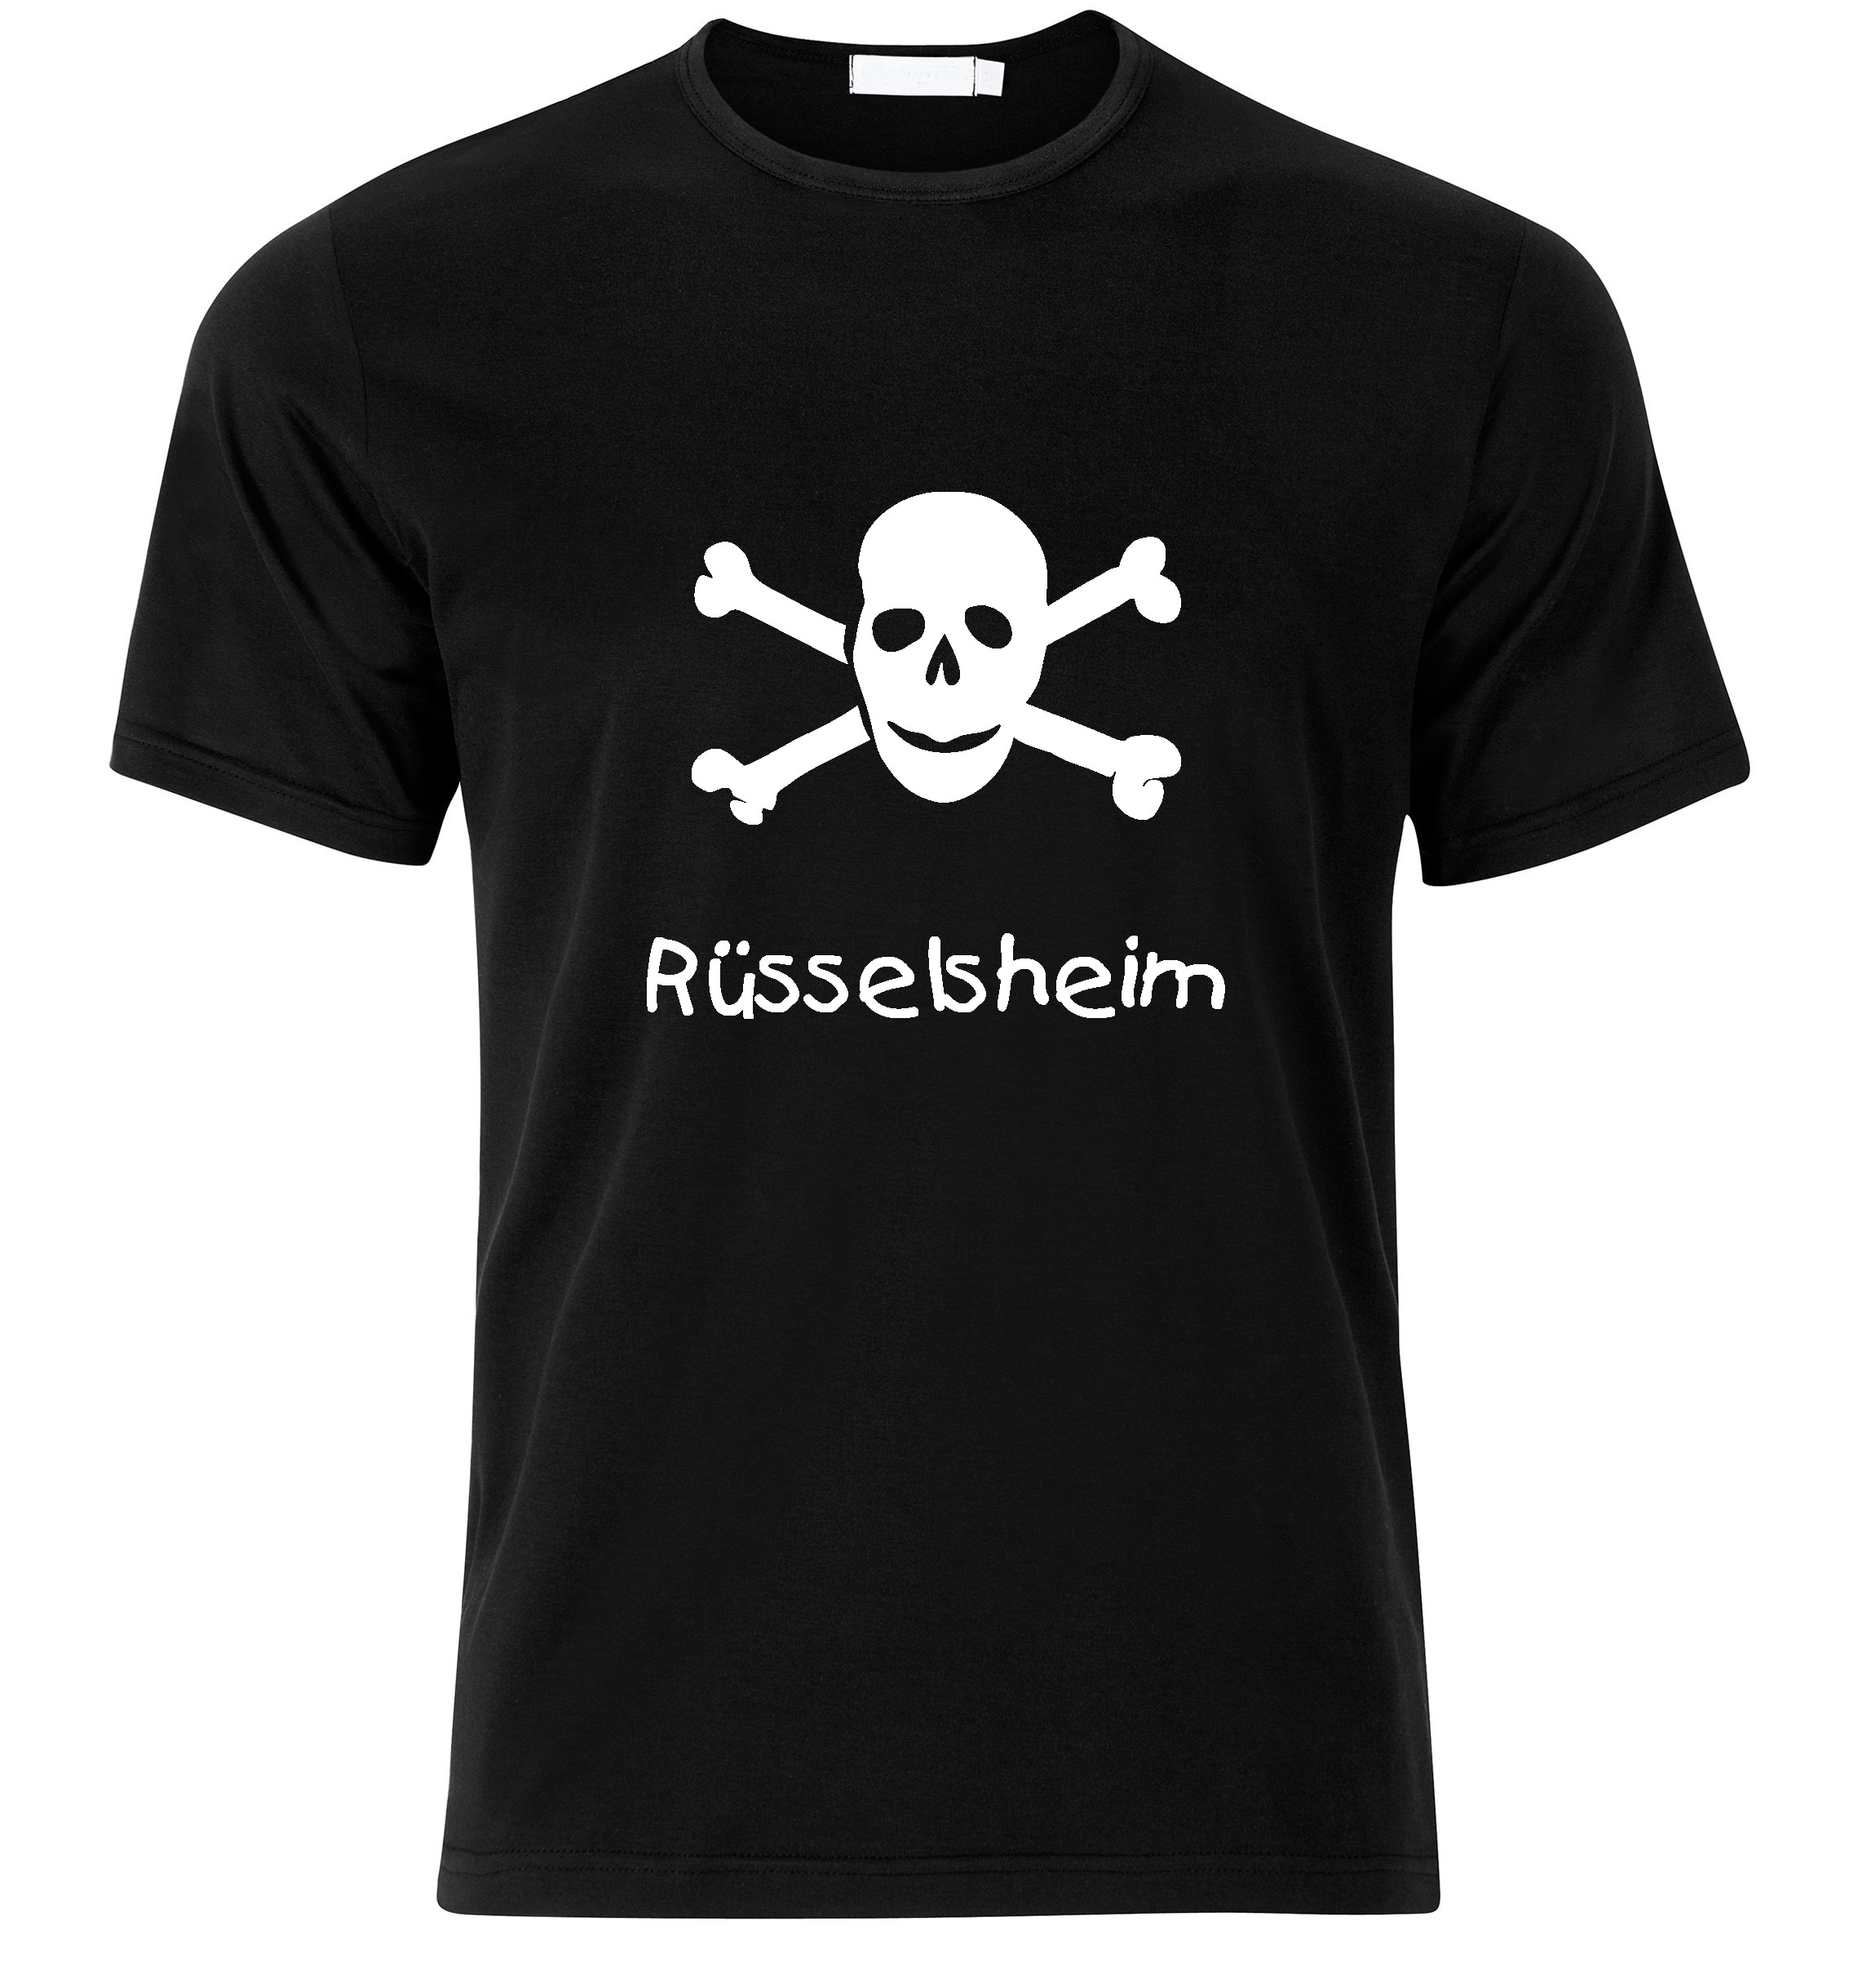 T-Shirt Rüsselsheim Jolly Roger, Totenkopf